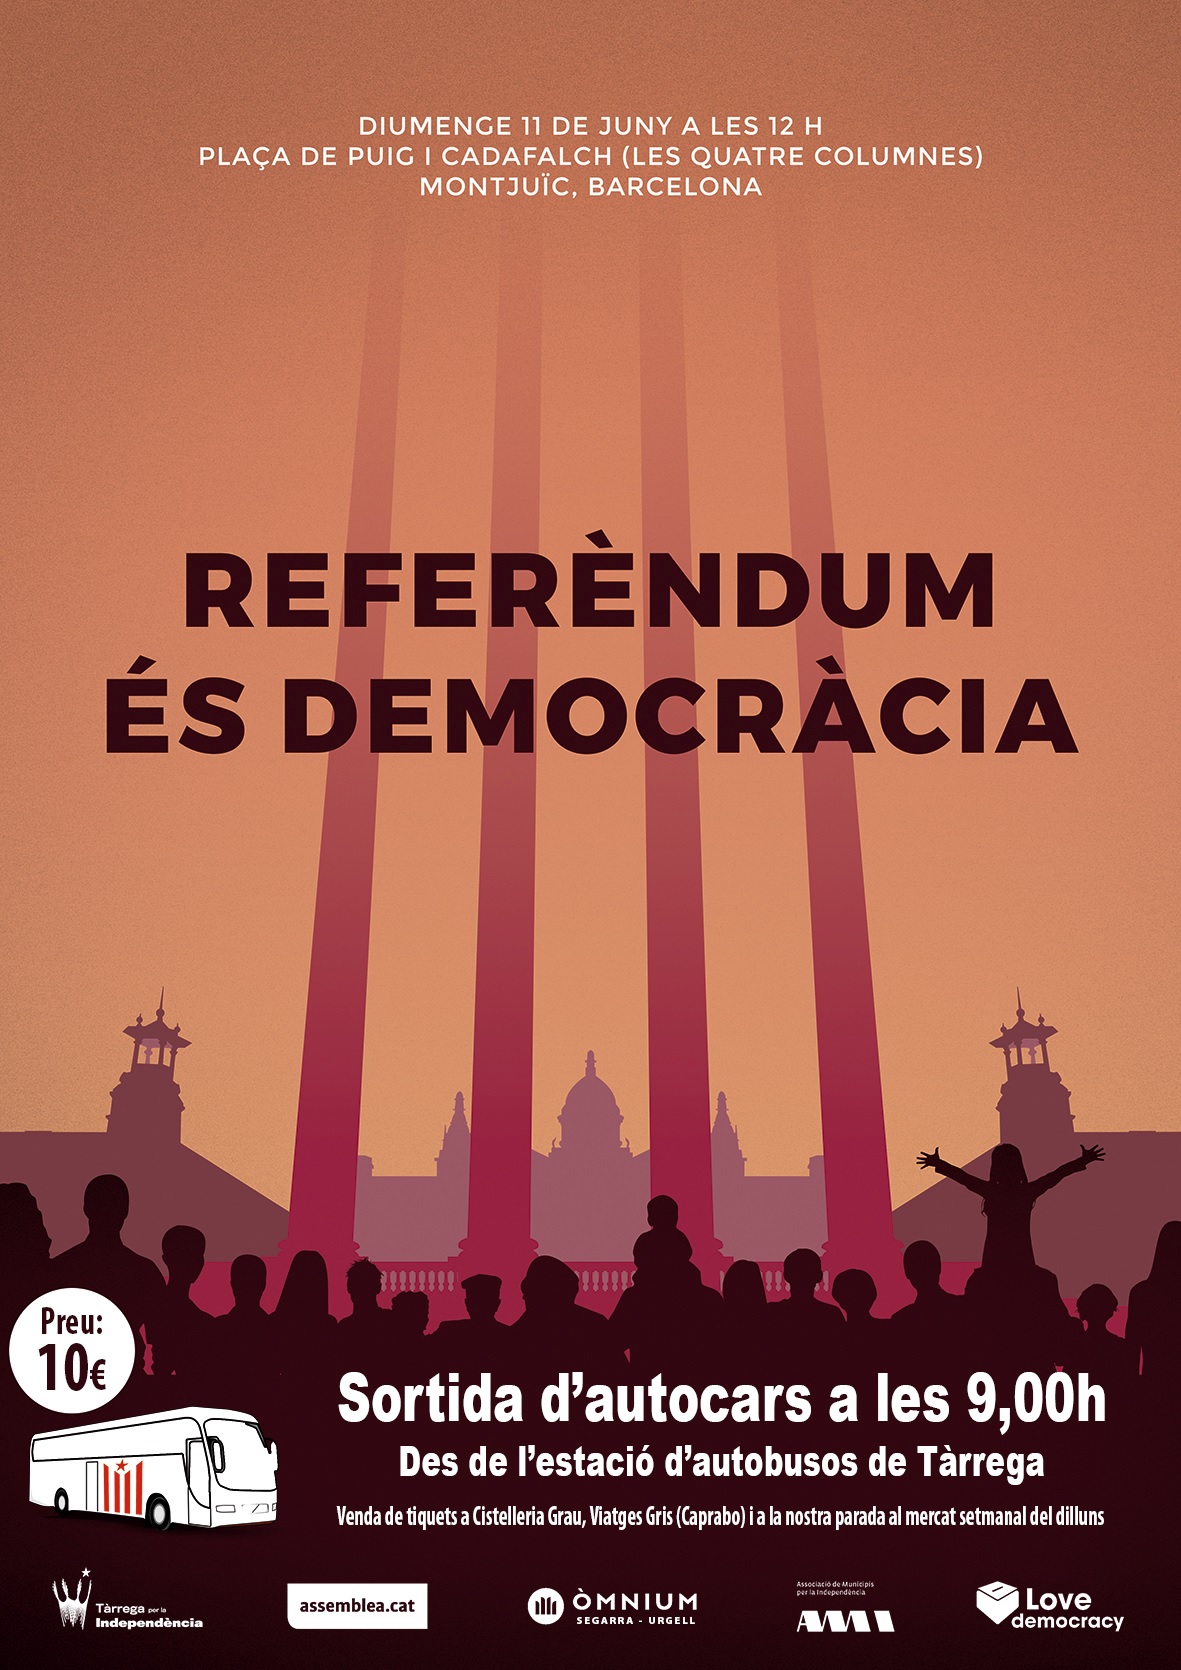 Tàrrega per la Independència organitza autocars per anar diumenge a Barcelona i donar suport al referèndum d’independència